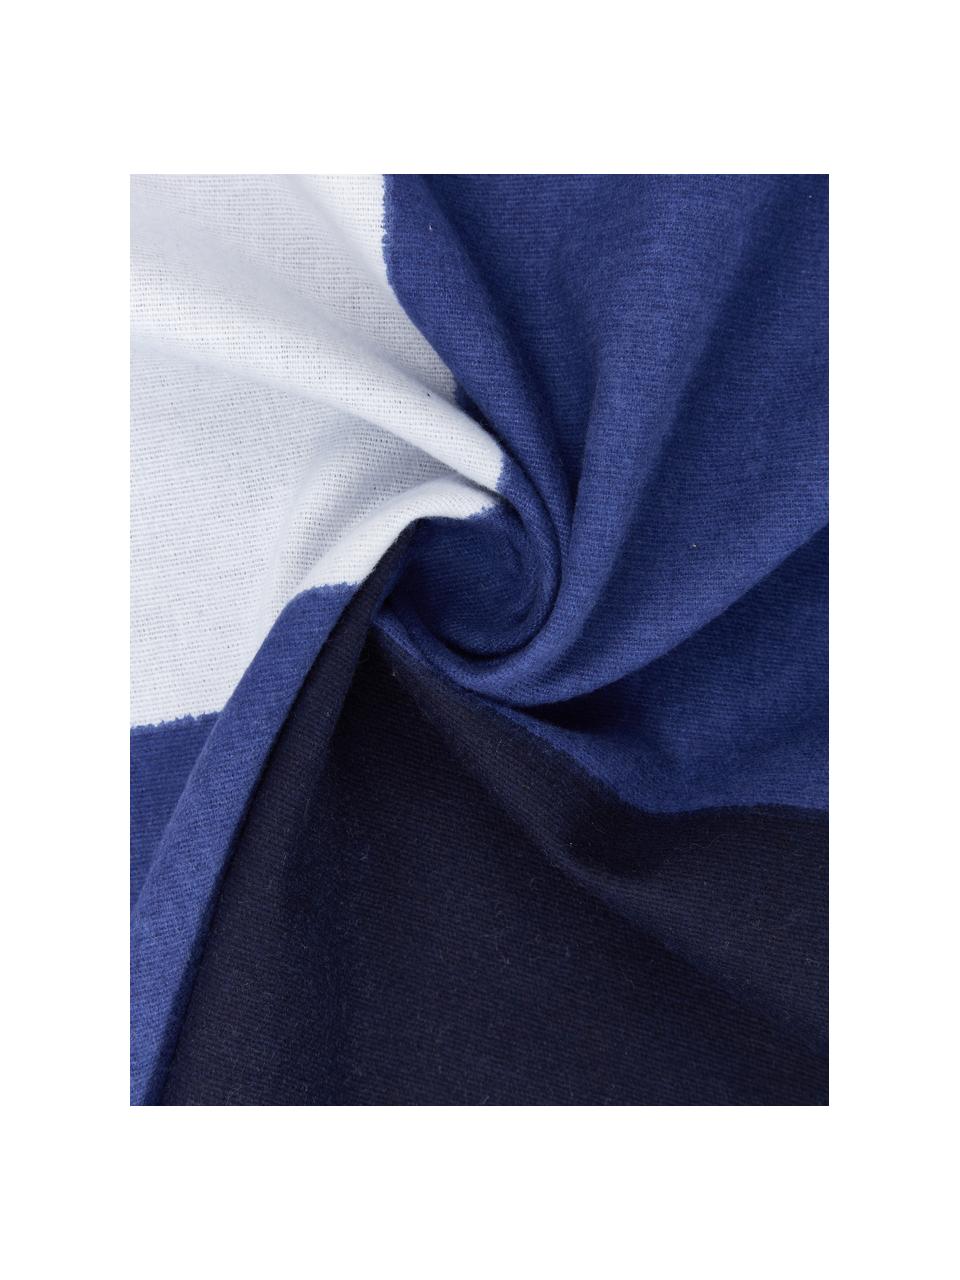 Karierte Flannel-Bettwäsche Cosy in Blau/Weiss, Webart: Flanell Flanell ist ein k, Blau, Weiss, 135 x 200 cm + 1 Kissen 80 x 80 cm